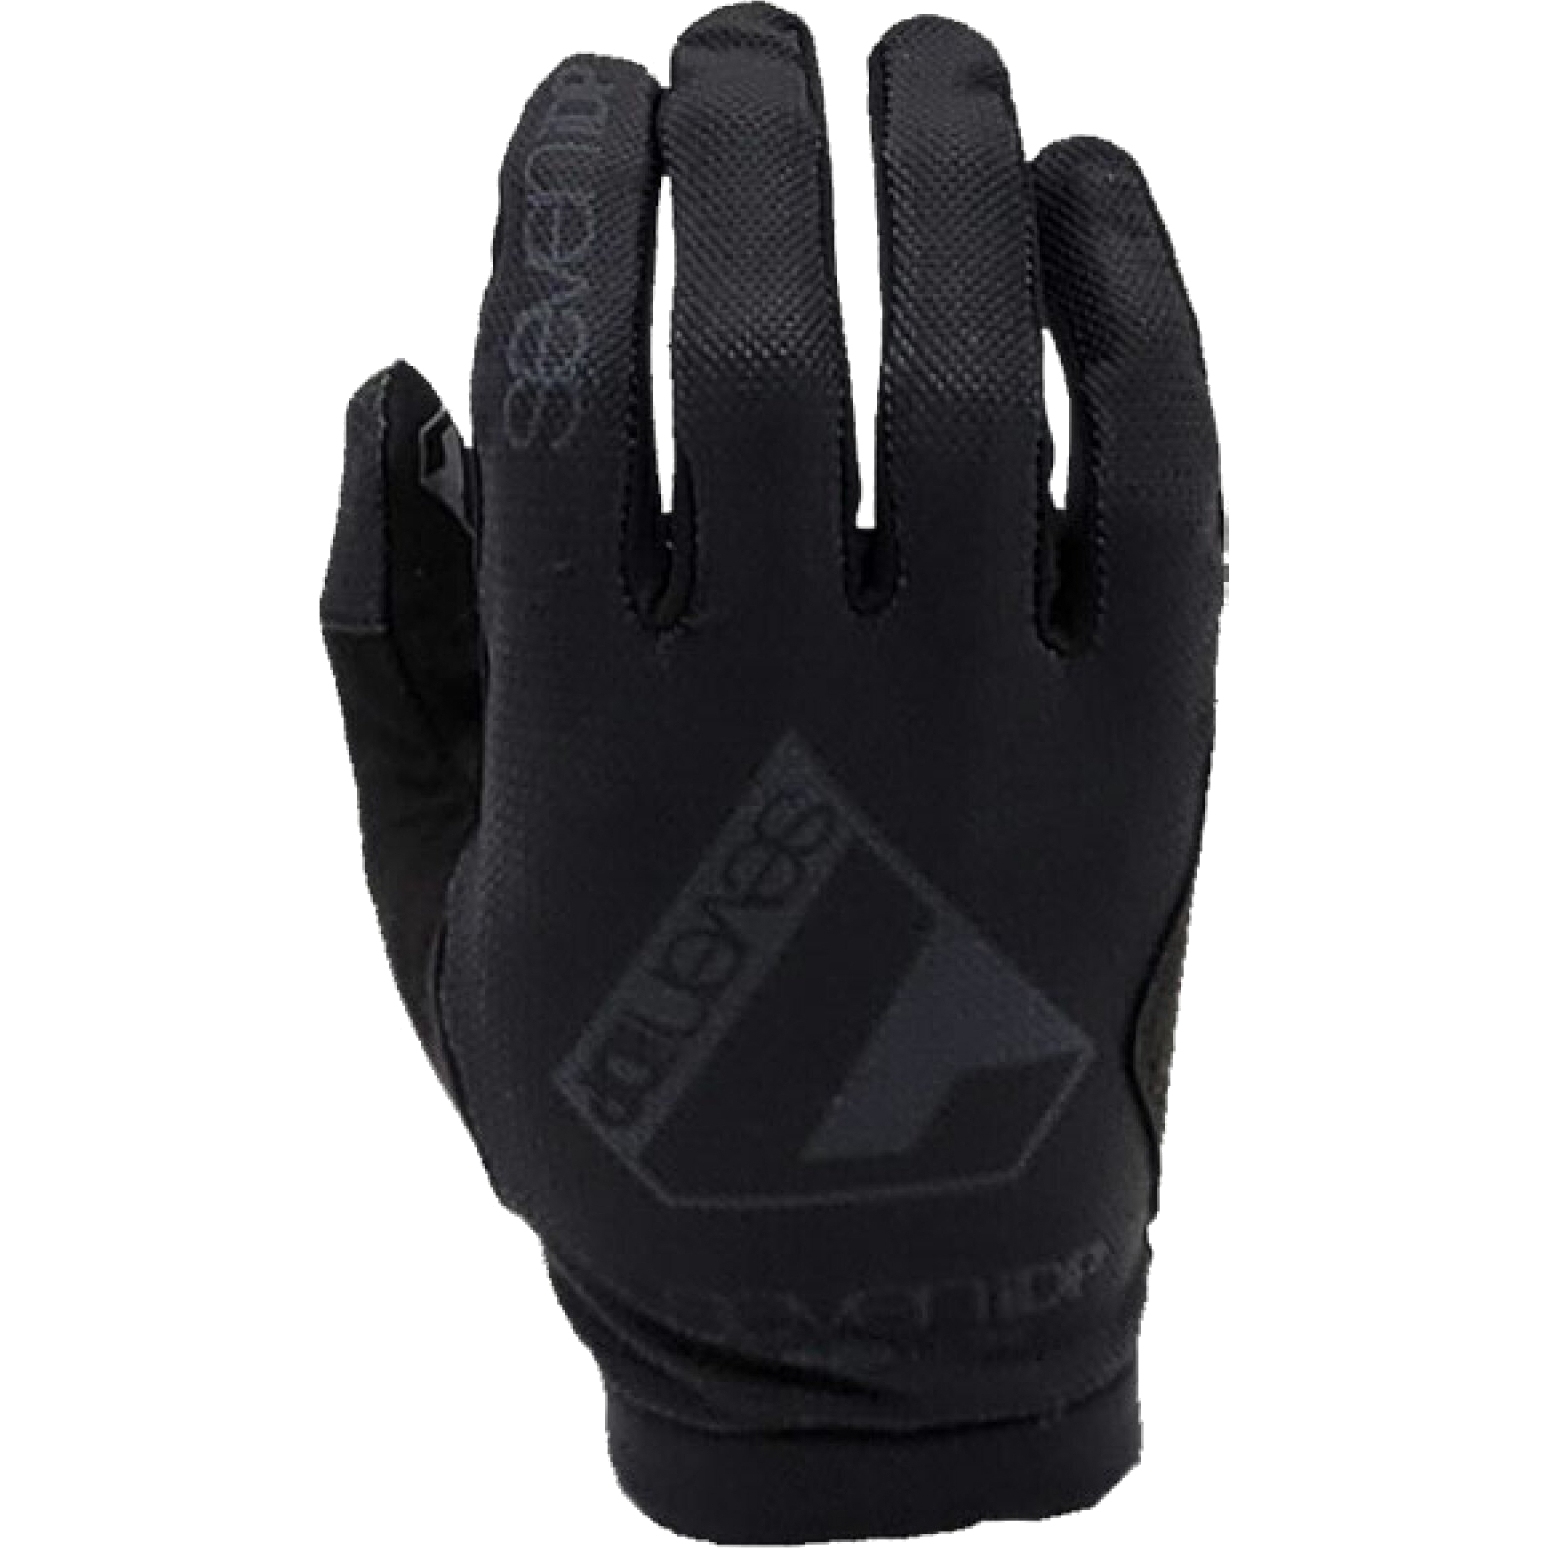 Produktbild von 7 Protection 7iDP Transition Handschuhe - schwarz